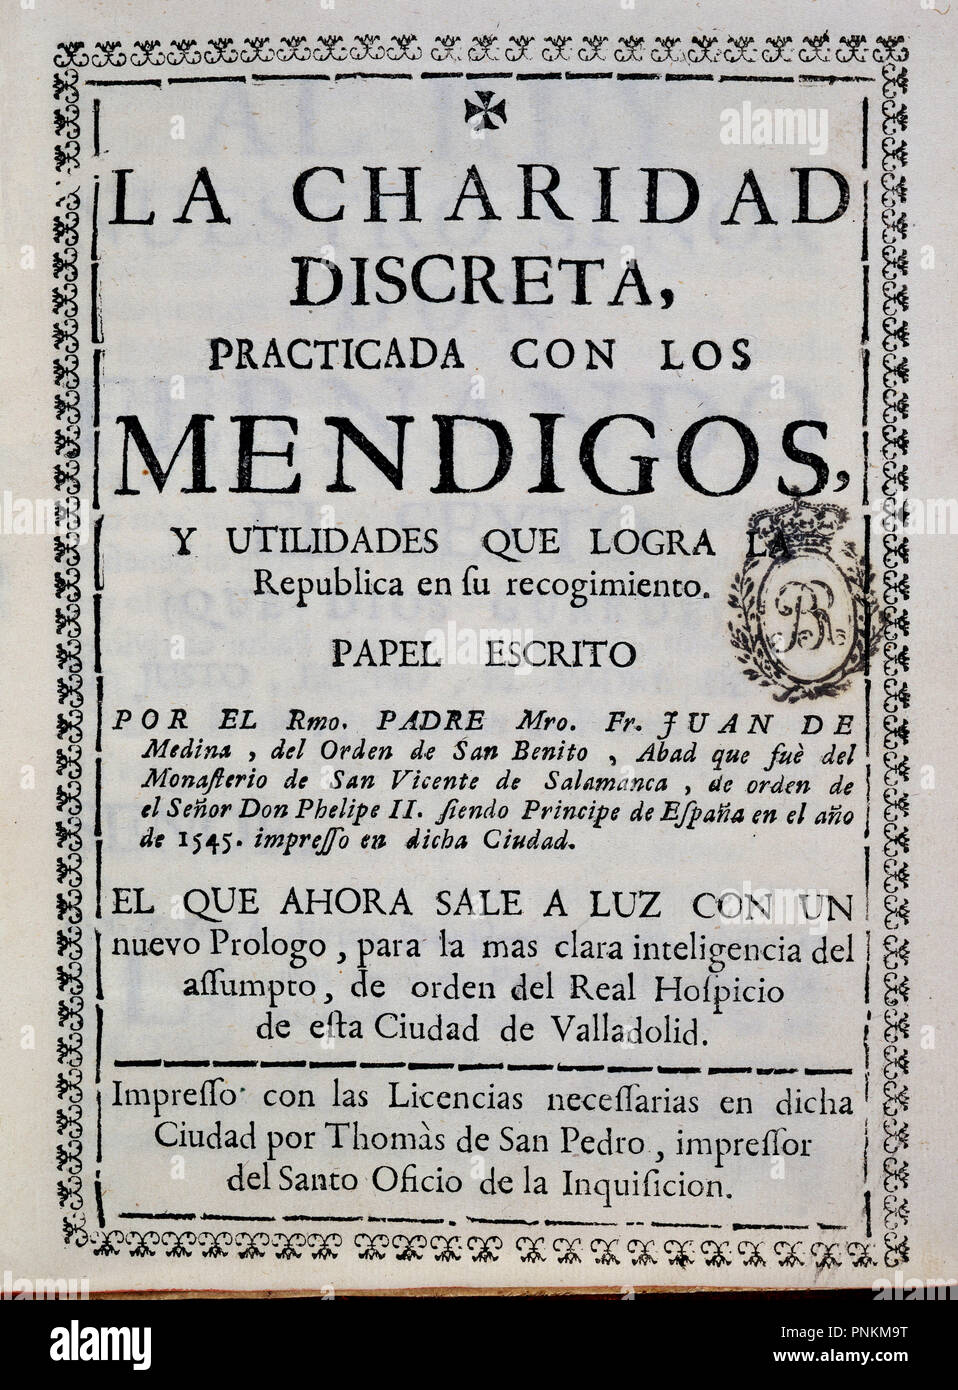 LA CARIDAD DISCRETA PRACTICADA CON LOS MENDIGOS. Author: MEDINA JUAN DE. Location: BIBLIOTECA NACIONAL-COLECCION. MADRID. SPAIN. Stock Photo